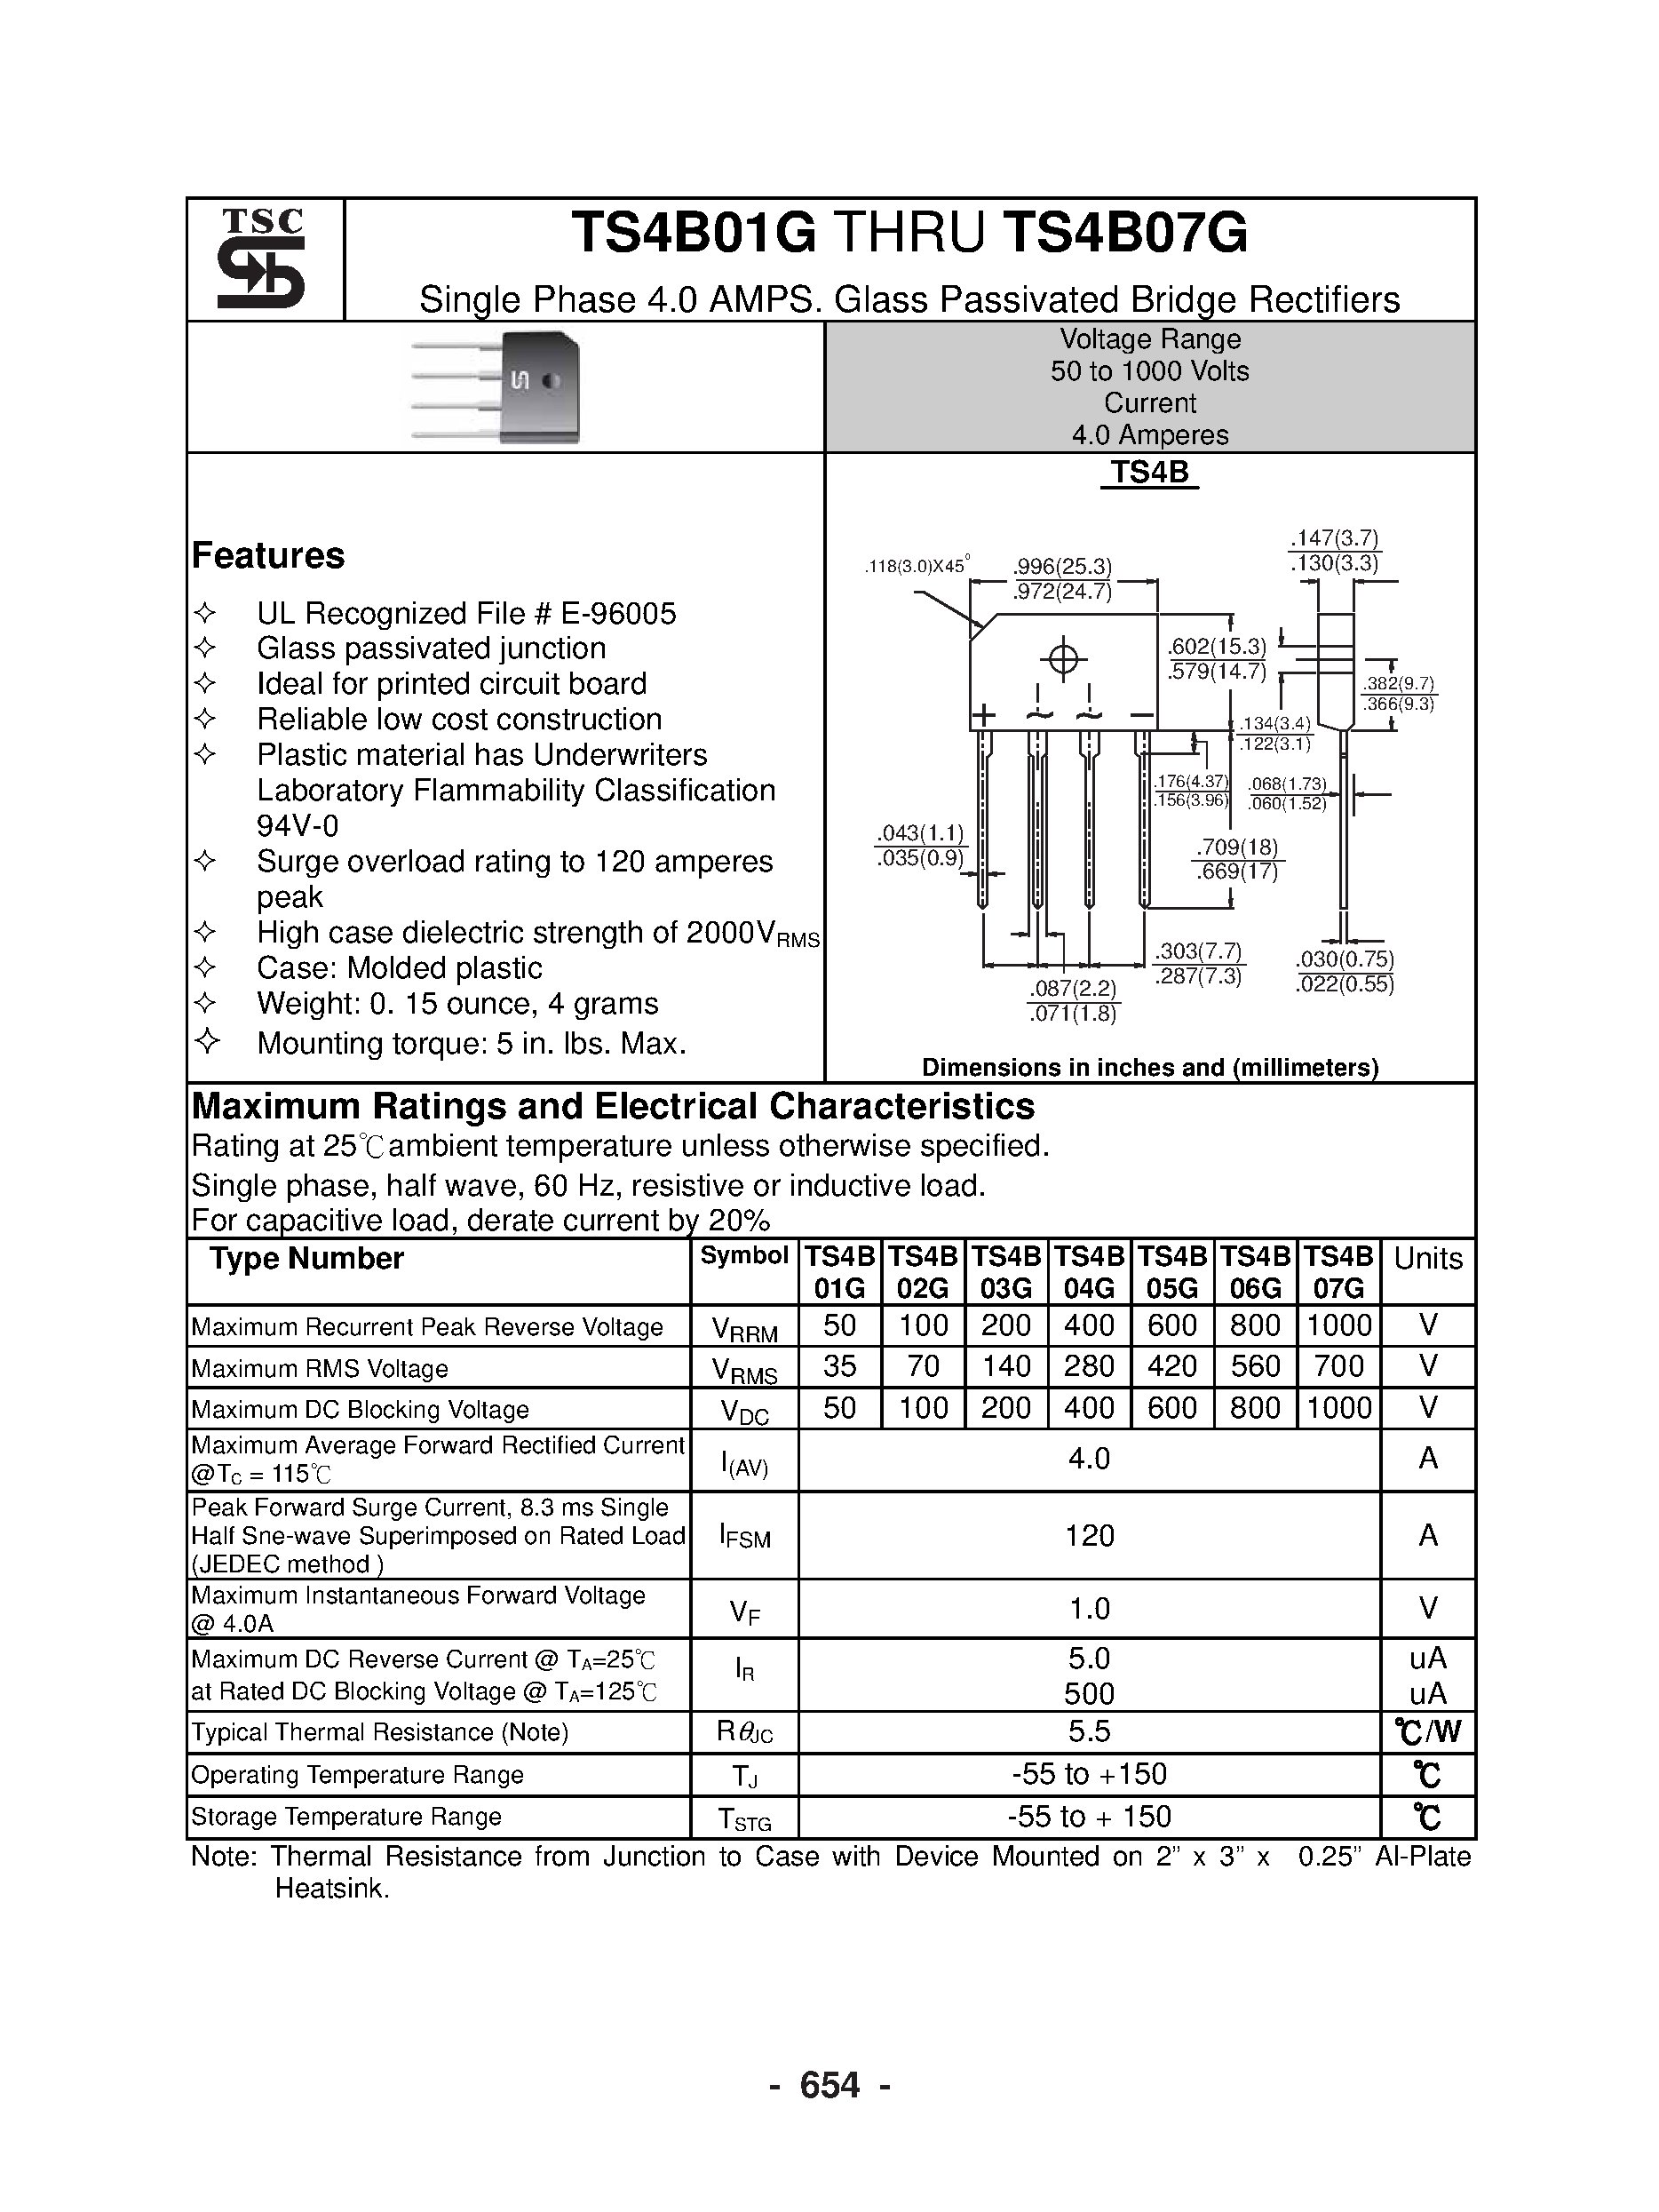 Datasheet TS4B01G - (TS4B01G - TS4B07G) Single Phase 4.0 AMPS / Glass Passivated Bridge Rectifiers page 1